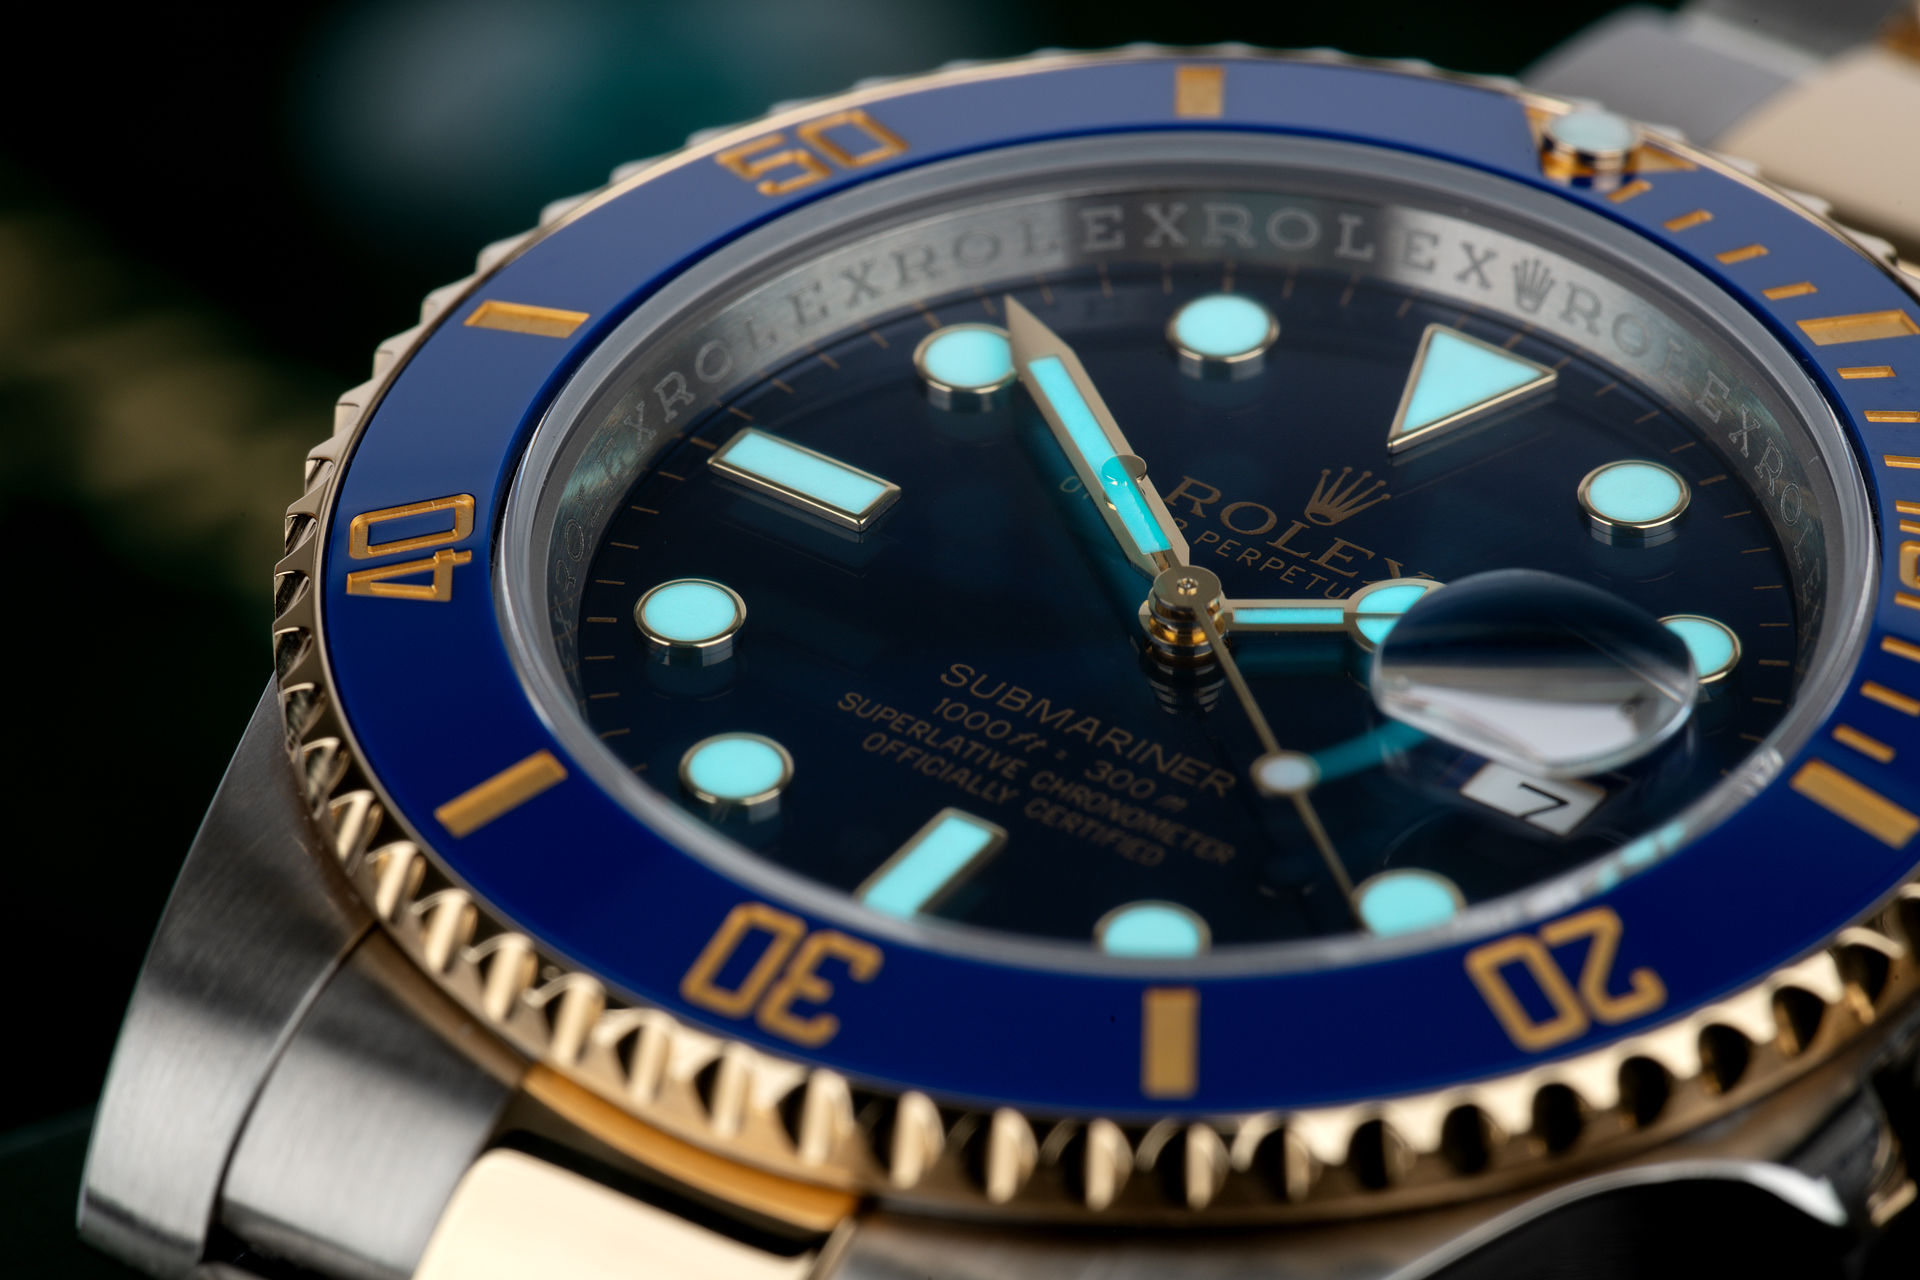 ref 116613LB | '2 Year Rolex Warranty'  | Rolex Submariner Date